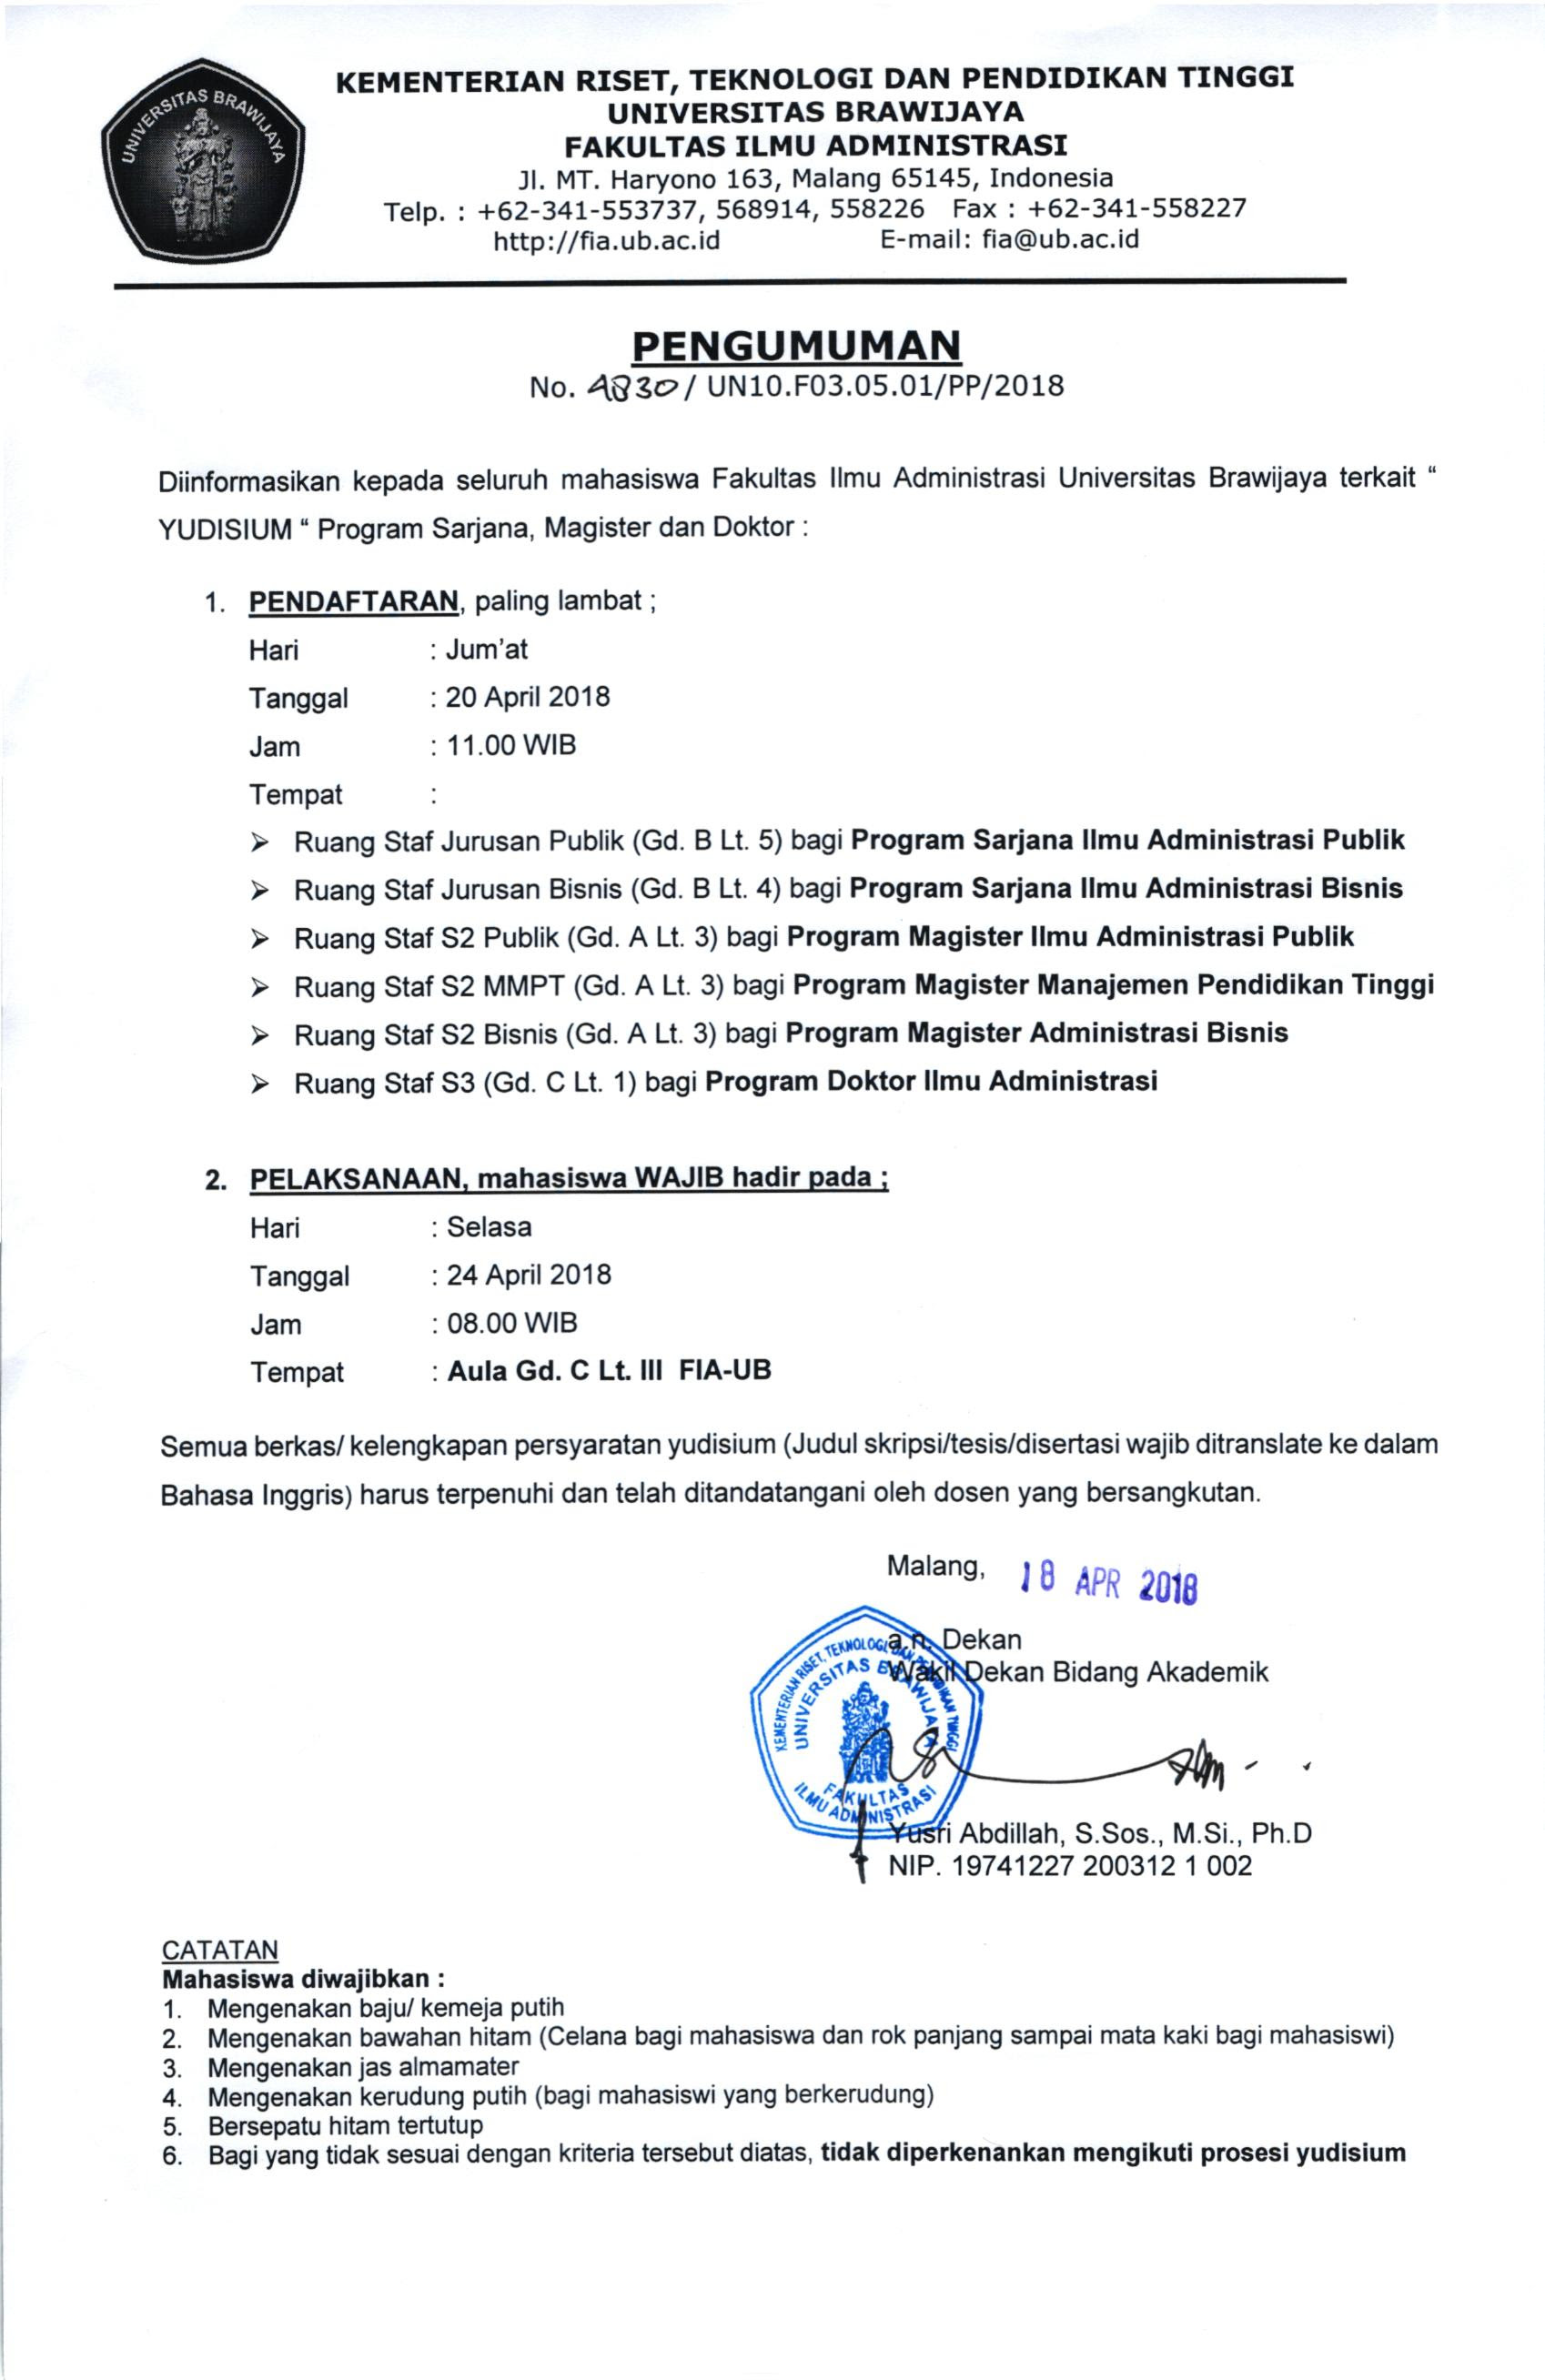 Jadwal Pendaftaran dan Pelaksanaan Yudisium Periode April 2018